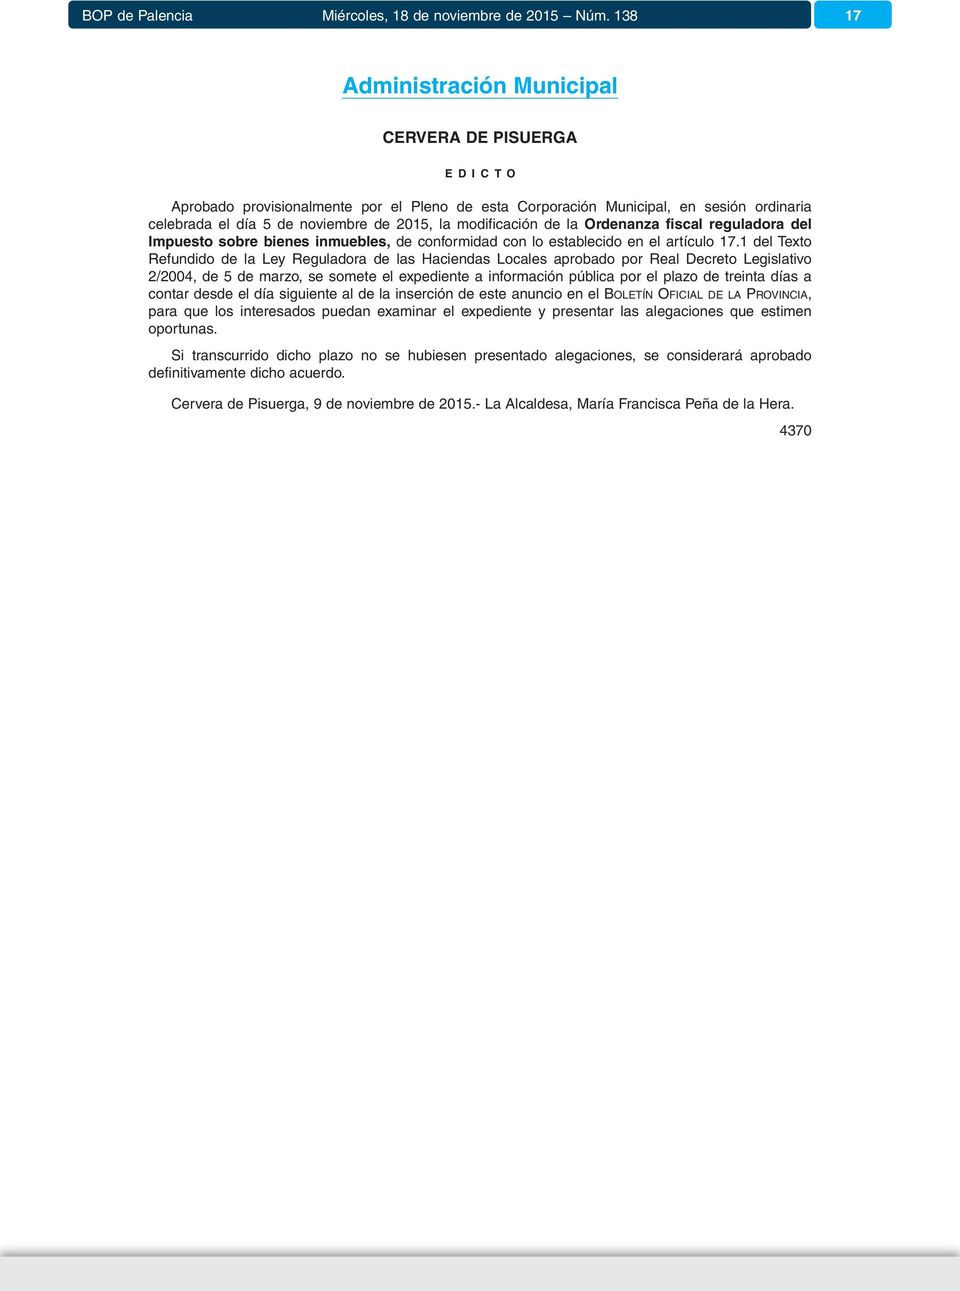 1 del Texto Refundido de la Ley Reguladora de las Haciendas Locales aprobado por Real Decreto Legislativo 2/2004, de 5 de marzo, se somete el expediente a información pública por el plazo de treinta